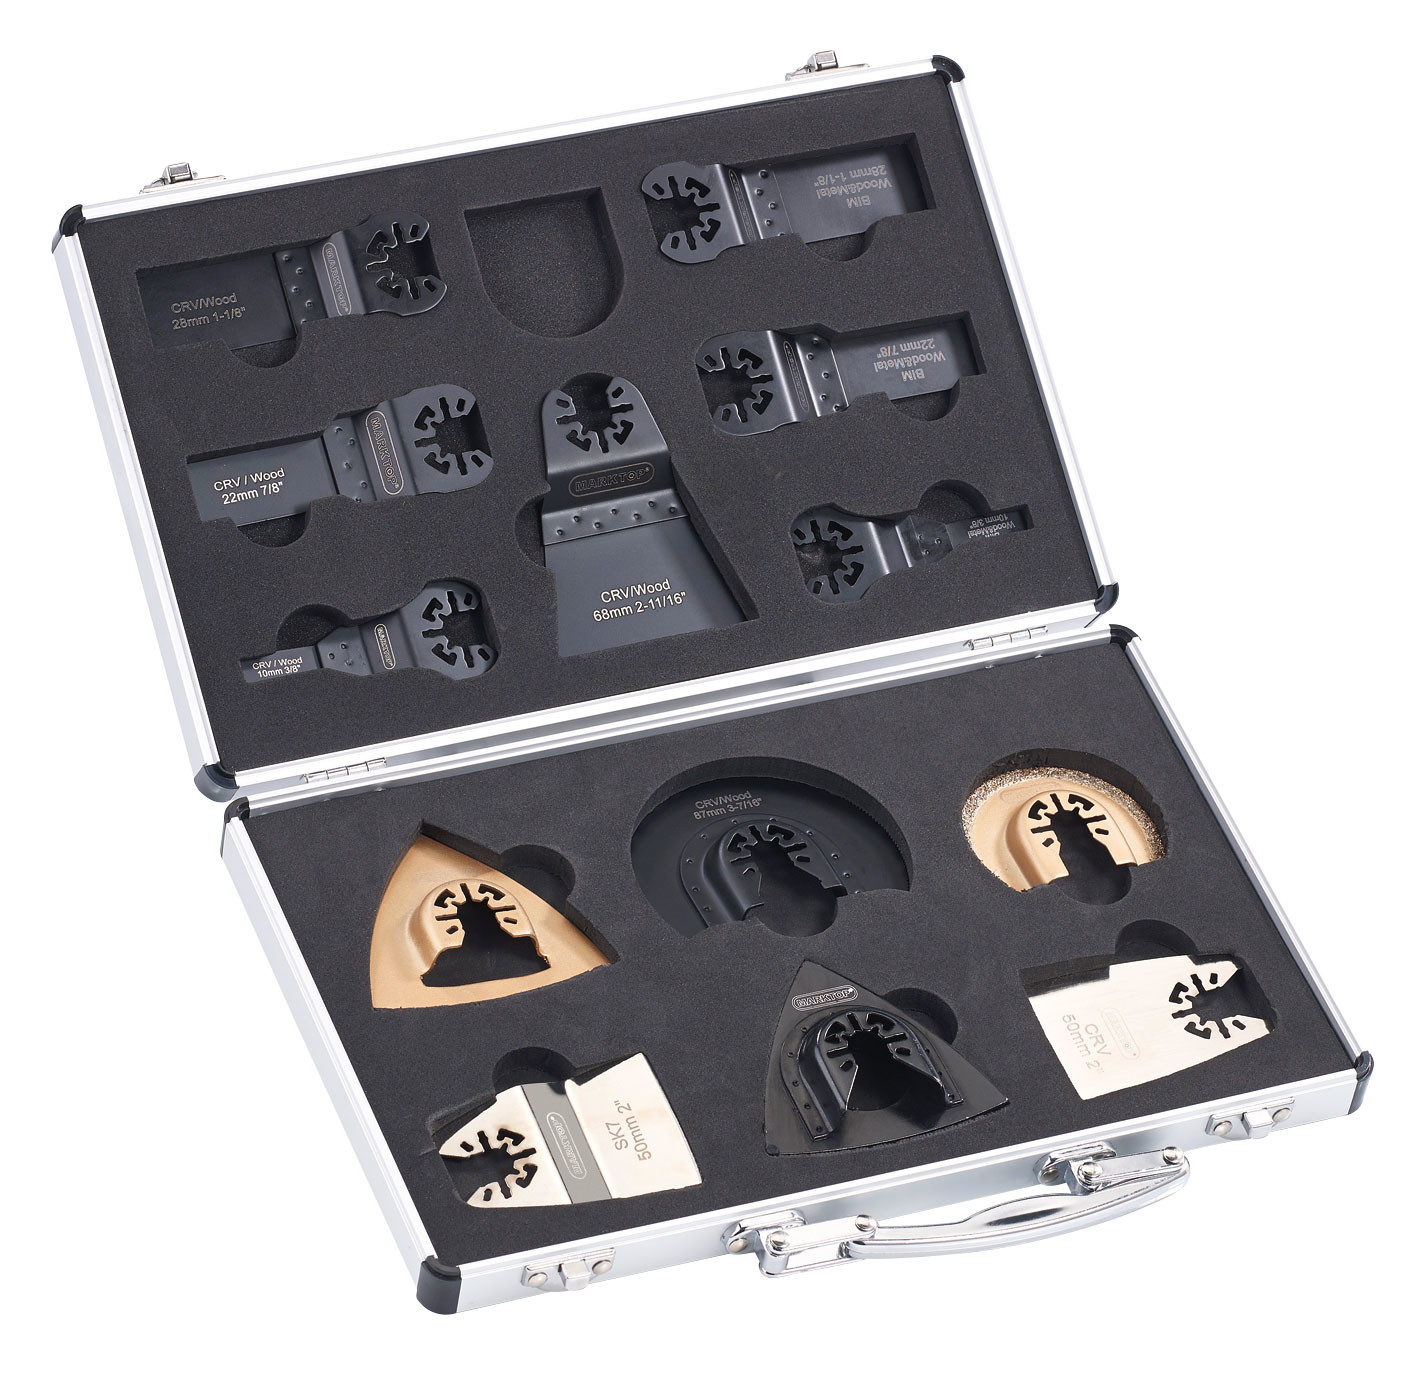 Dremel Kit 18 pièces d'accessoires rotatifs de ponçage et meulage